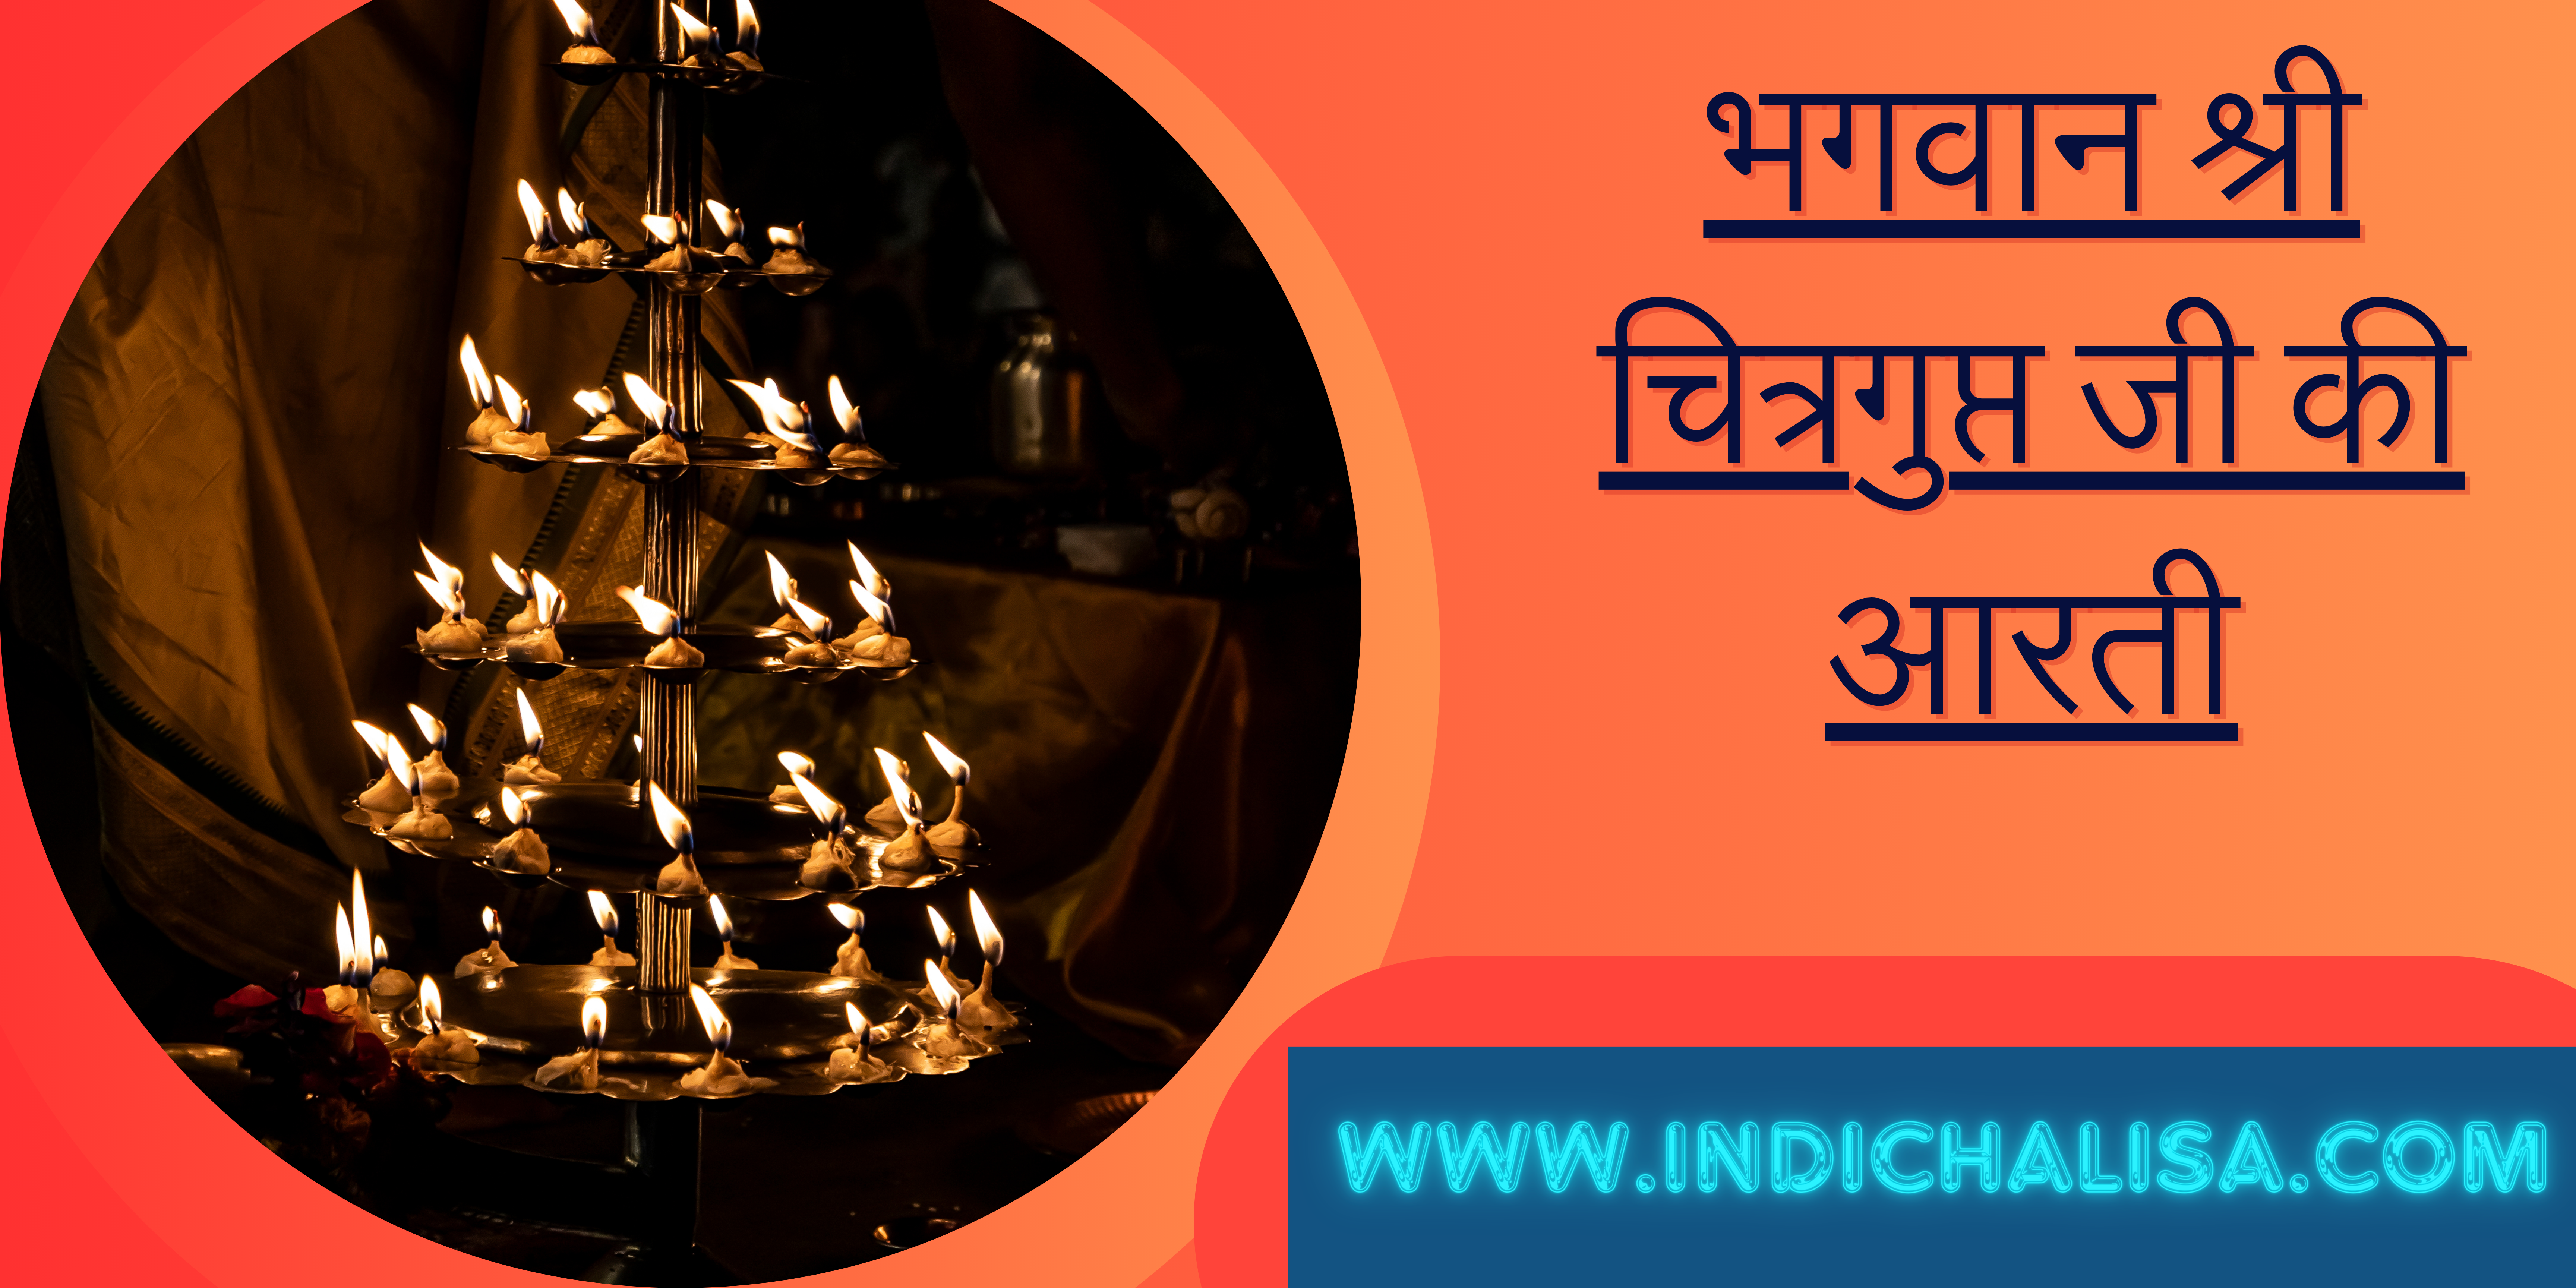 भगवान श्री चित्रगुप्त जी की आरती|भगवान श्री चित्रगुप्त जी की आरती|Indichalisa|Indichalisa